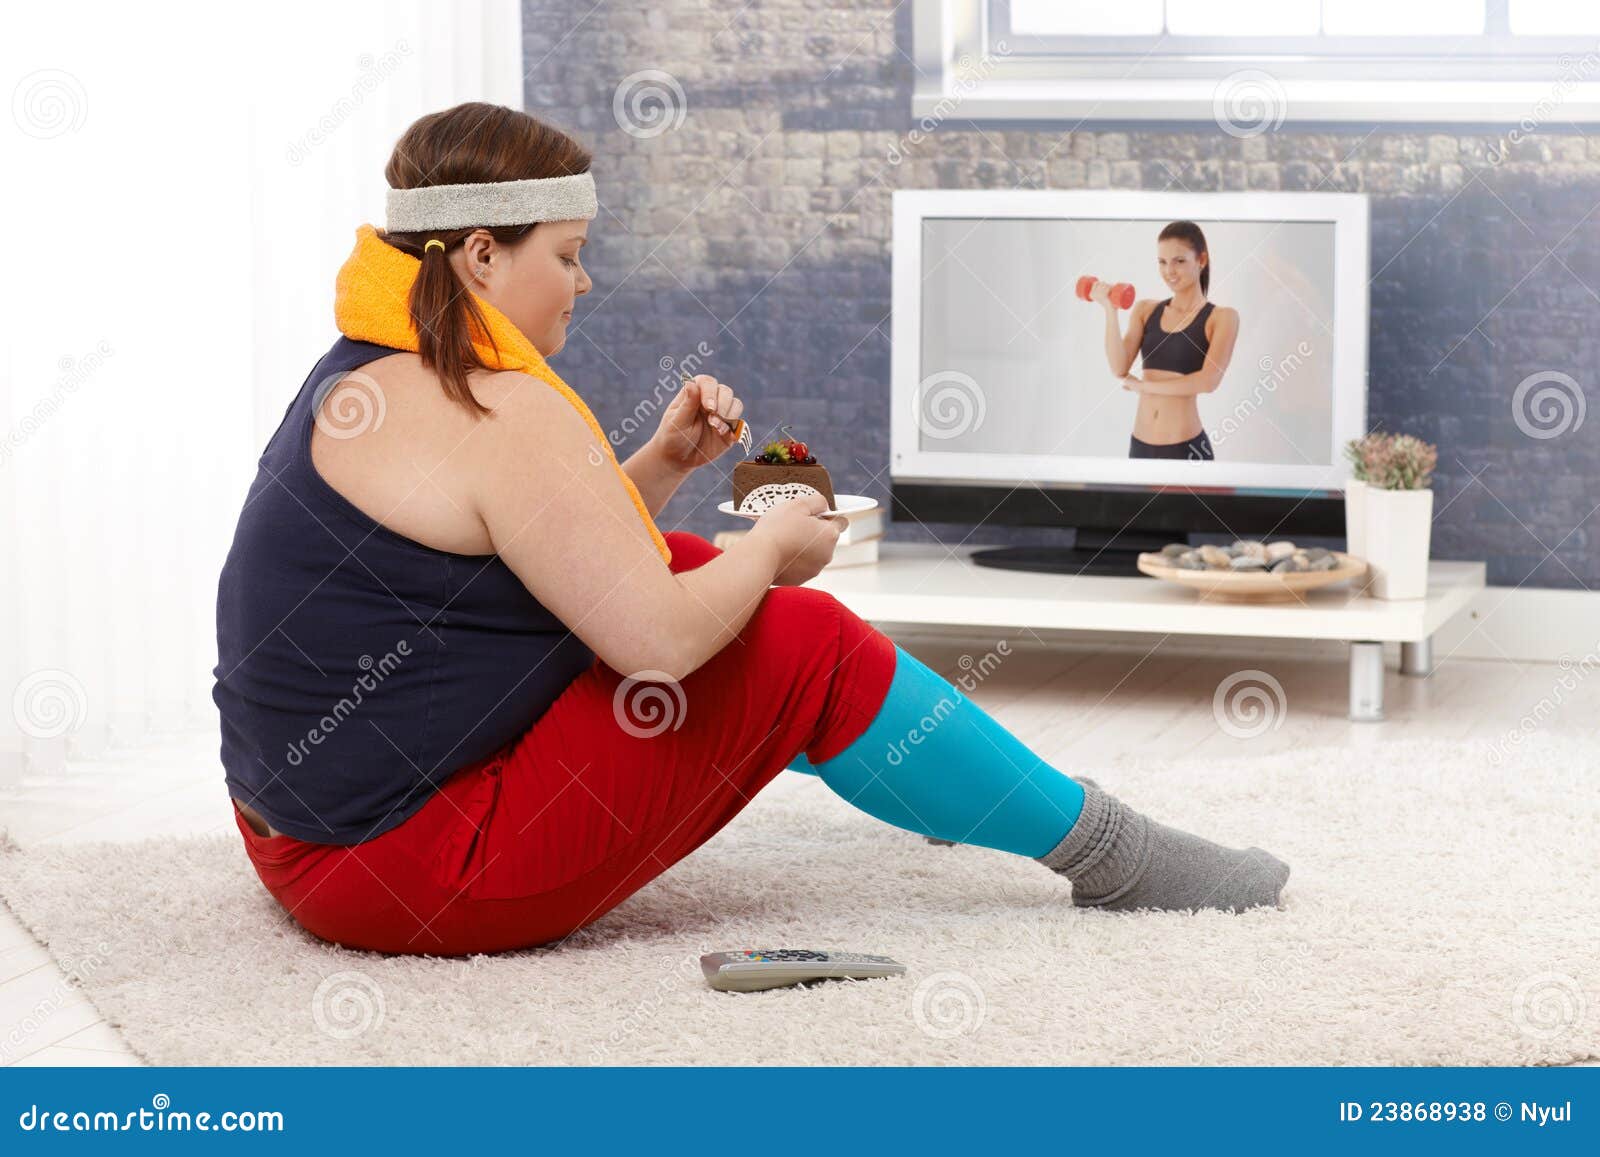 Тучная женщина есть торт шоколада в sportswear. Тучные женщины сидя на поле с тортом шоколада пока наблюдающ программу пригодности на телевидении.